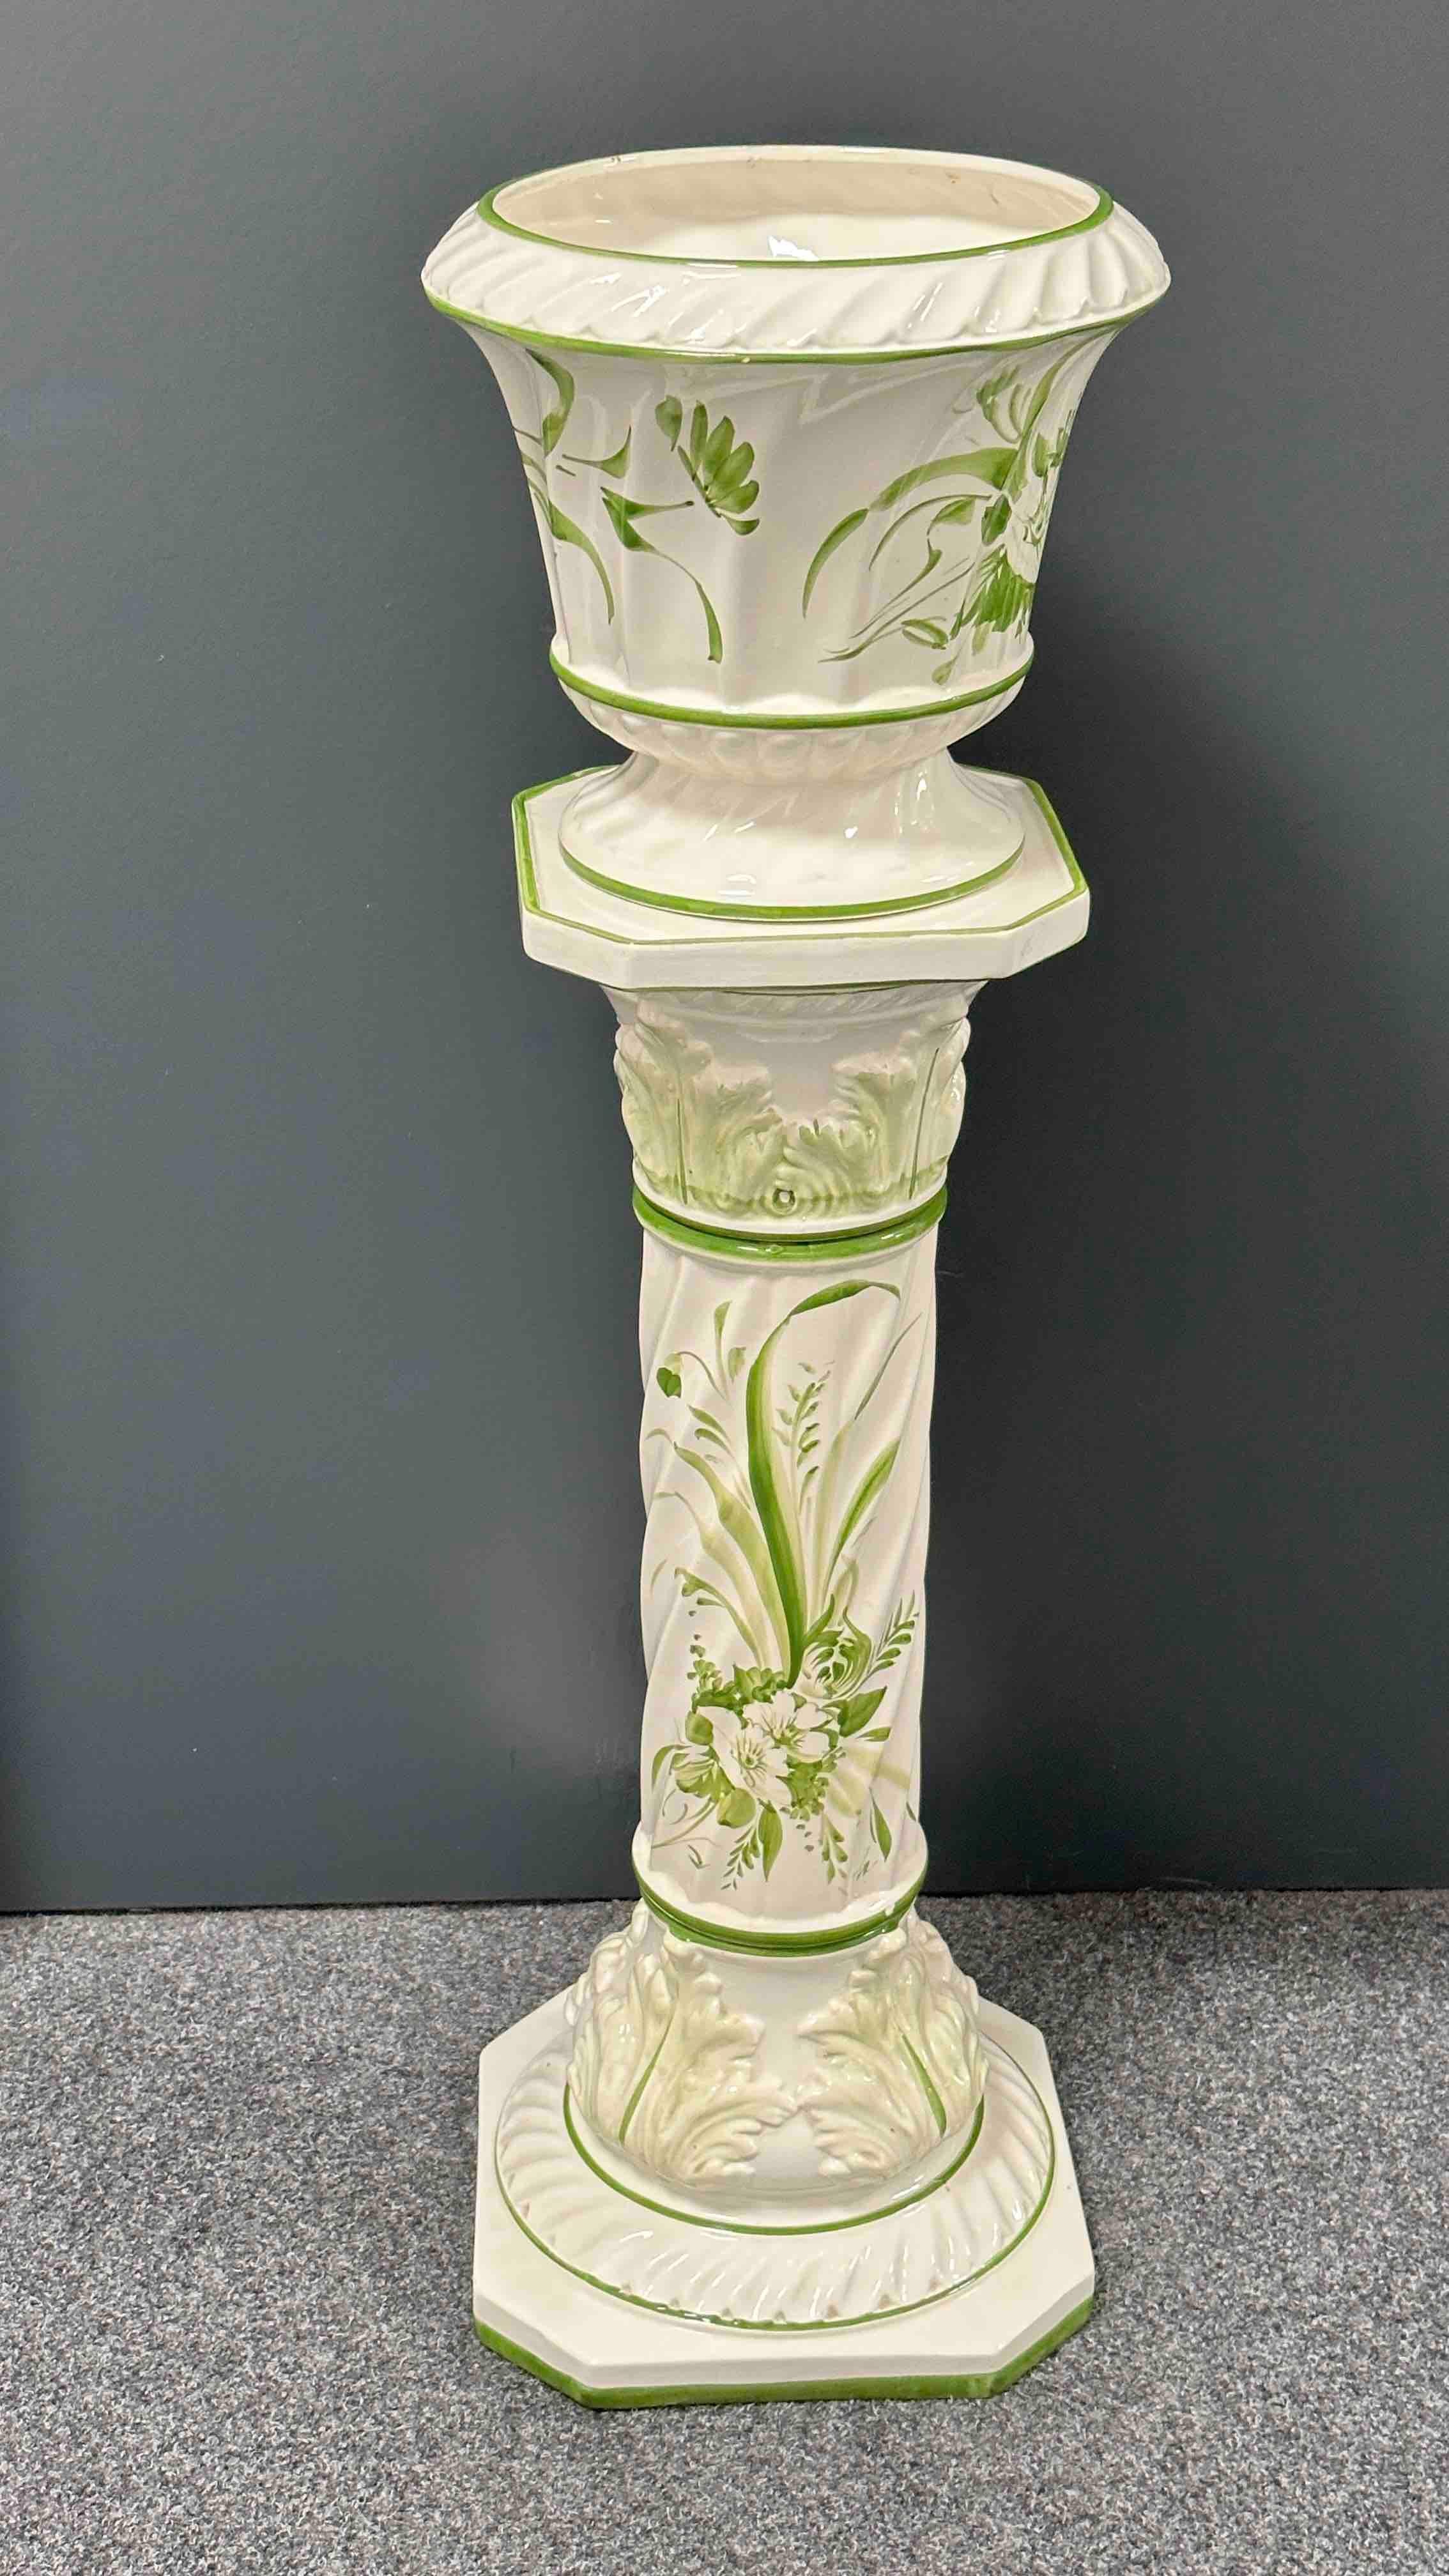 Glasierter Keramik-Pflanzensockel des 20. Jahrhunderts und Blumentopfsitz. Handgefertigt aus Keramik. Eine schöne Ergänzung für Ihr Haus, Ihre Terrasse oder Ihren Garten. Dies ist in gebrauchtem Zustand, mit Anzeichen von Verschleiß, wie mit Alter